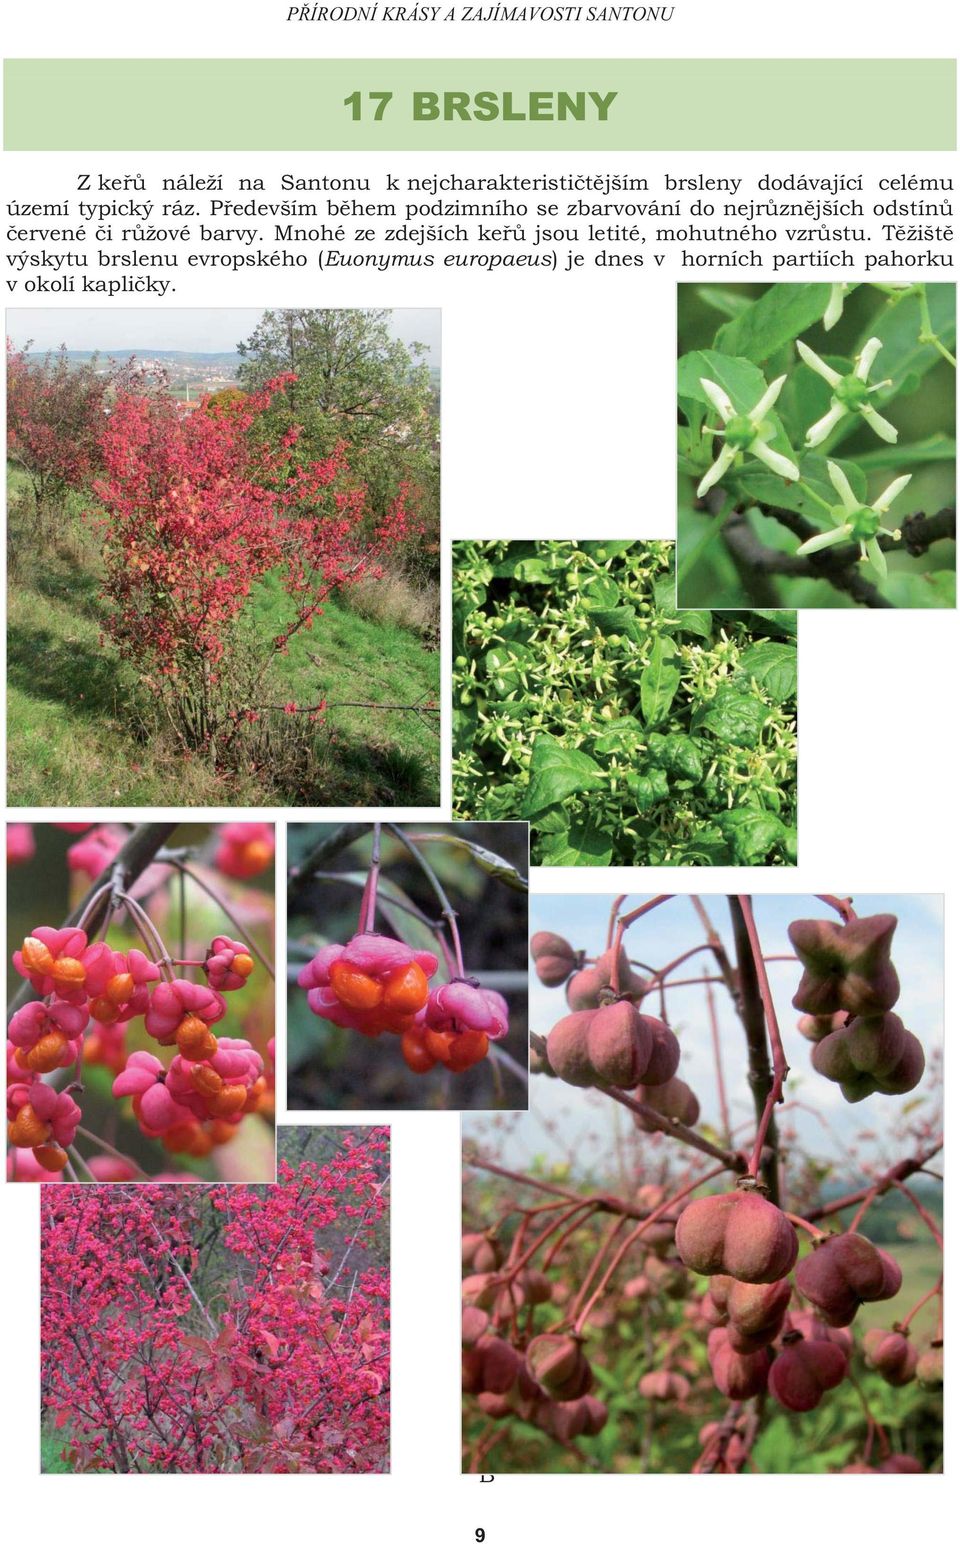 Především během podzimního se zbarvování do nejrůznějších odstínů červené či růžové barvy.